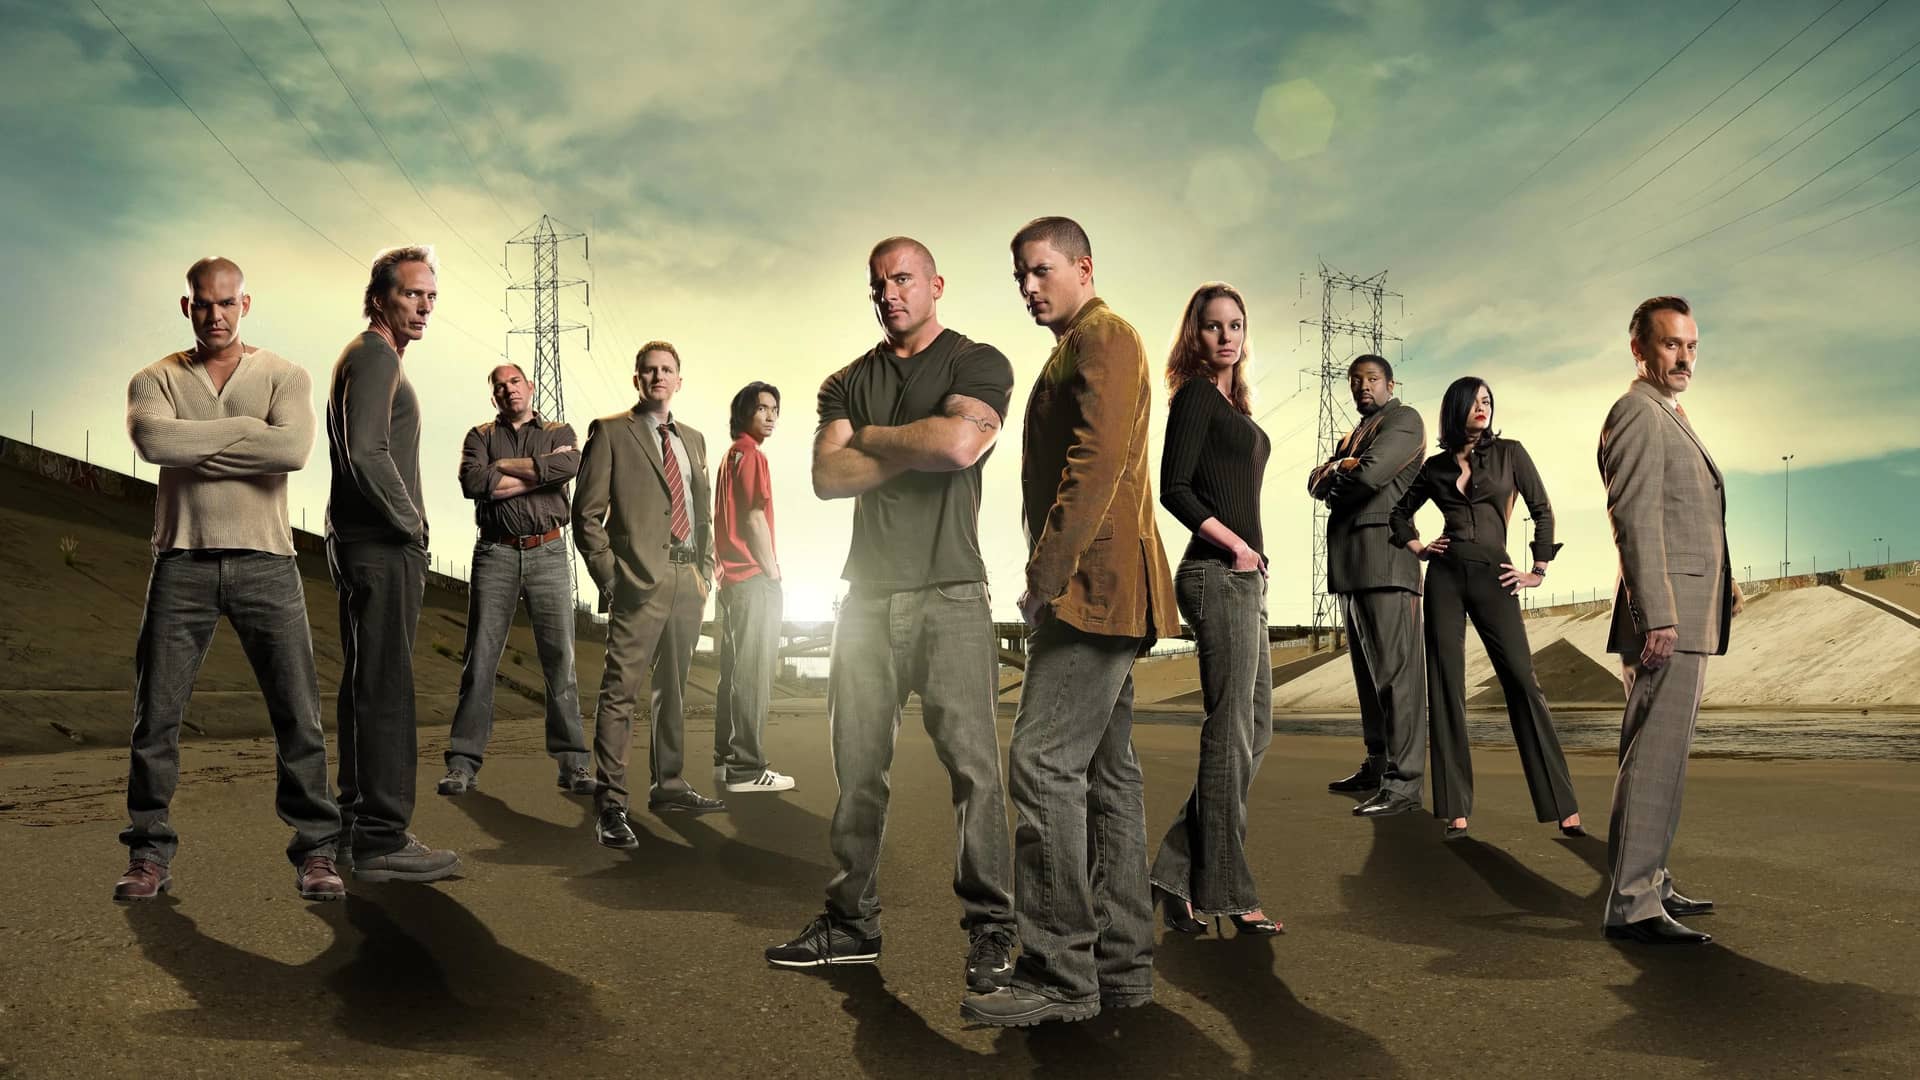 Dónde ver Prison Break online en castellano: temporada 6 y reparto